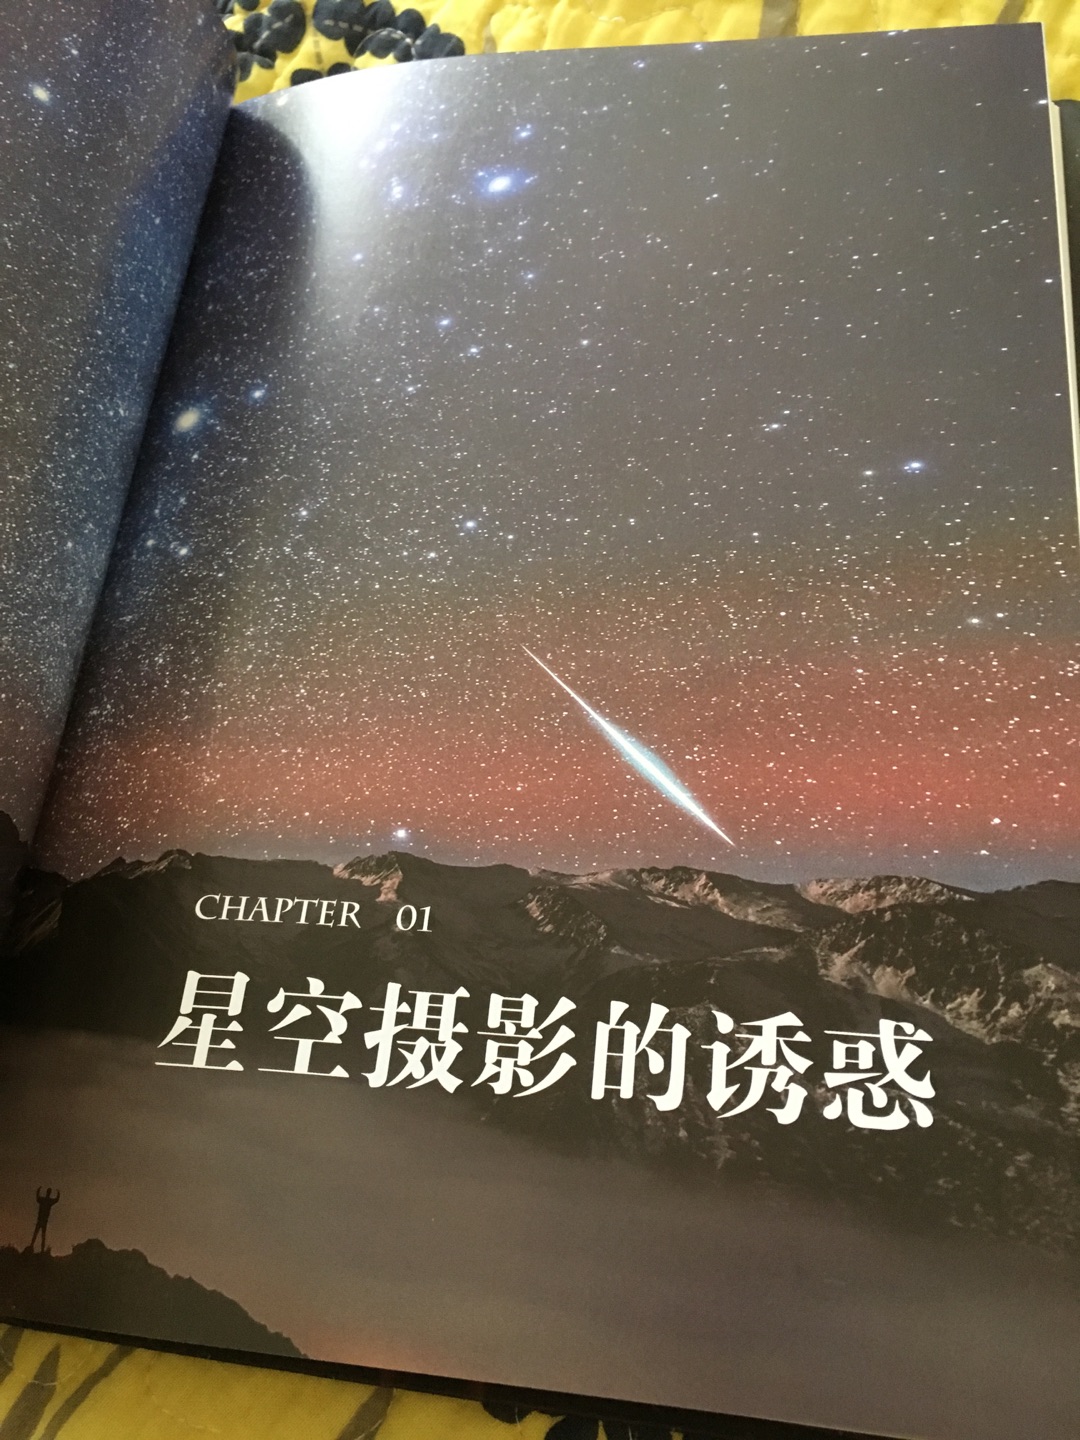 有活动果断下手。一大早收到这本《星空摄影笔记》，特别开心！一直想要学习的领悟，一定好好研读。希望有一天也能拍出自己的星光大片。